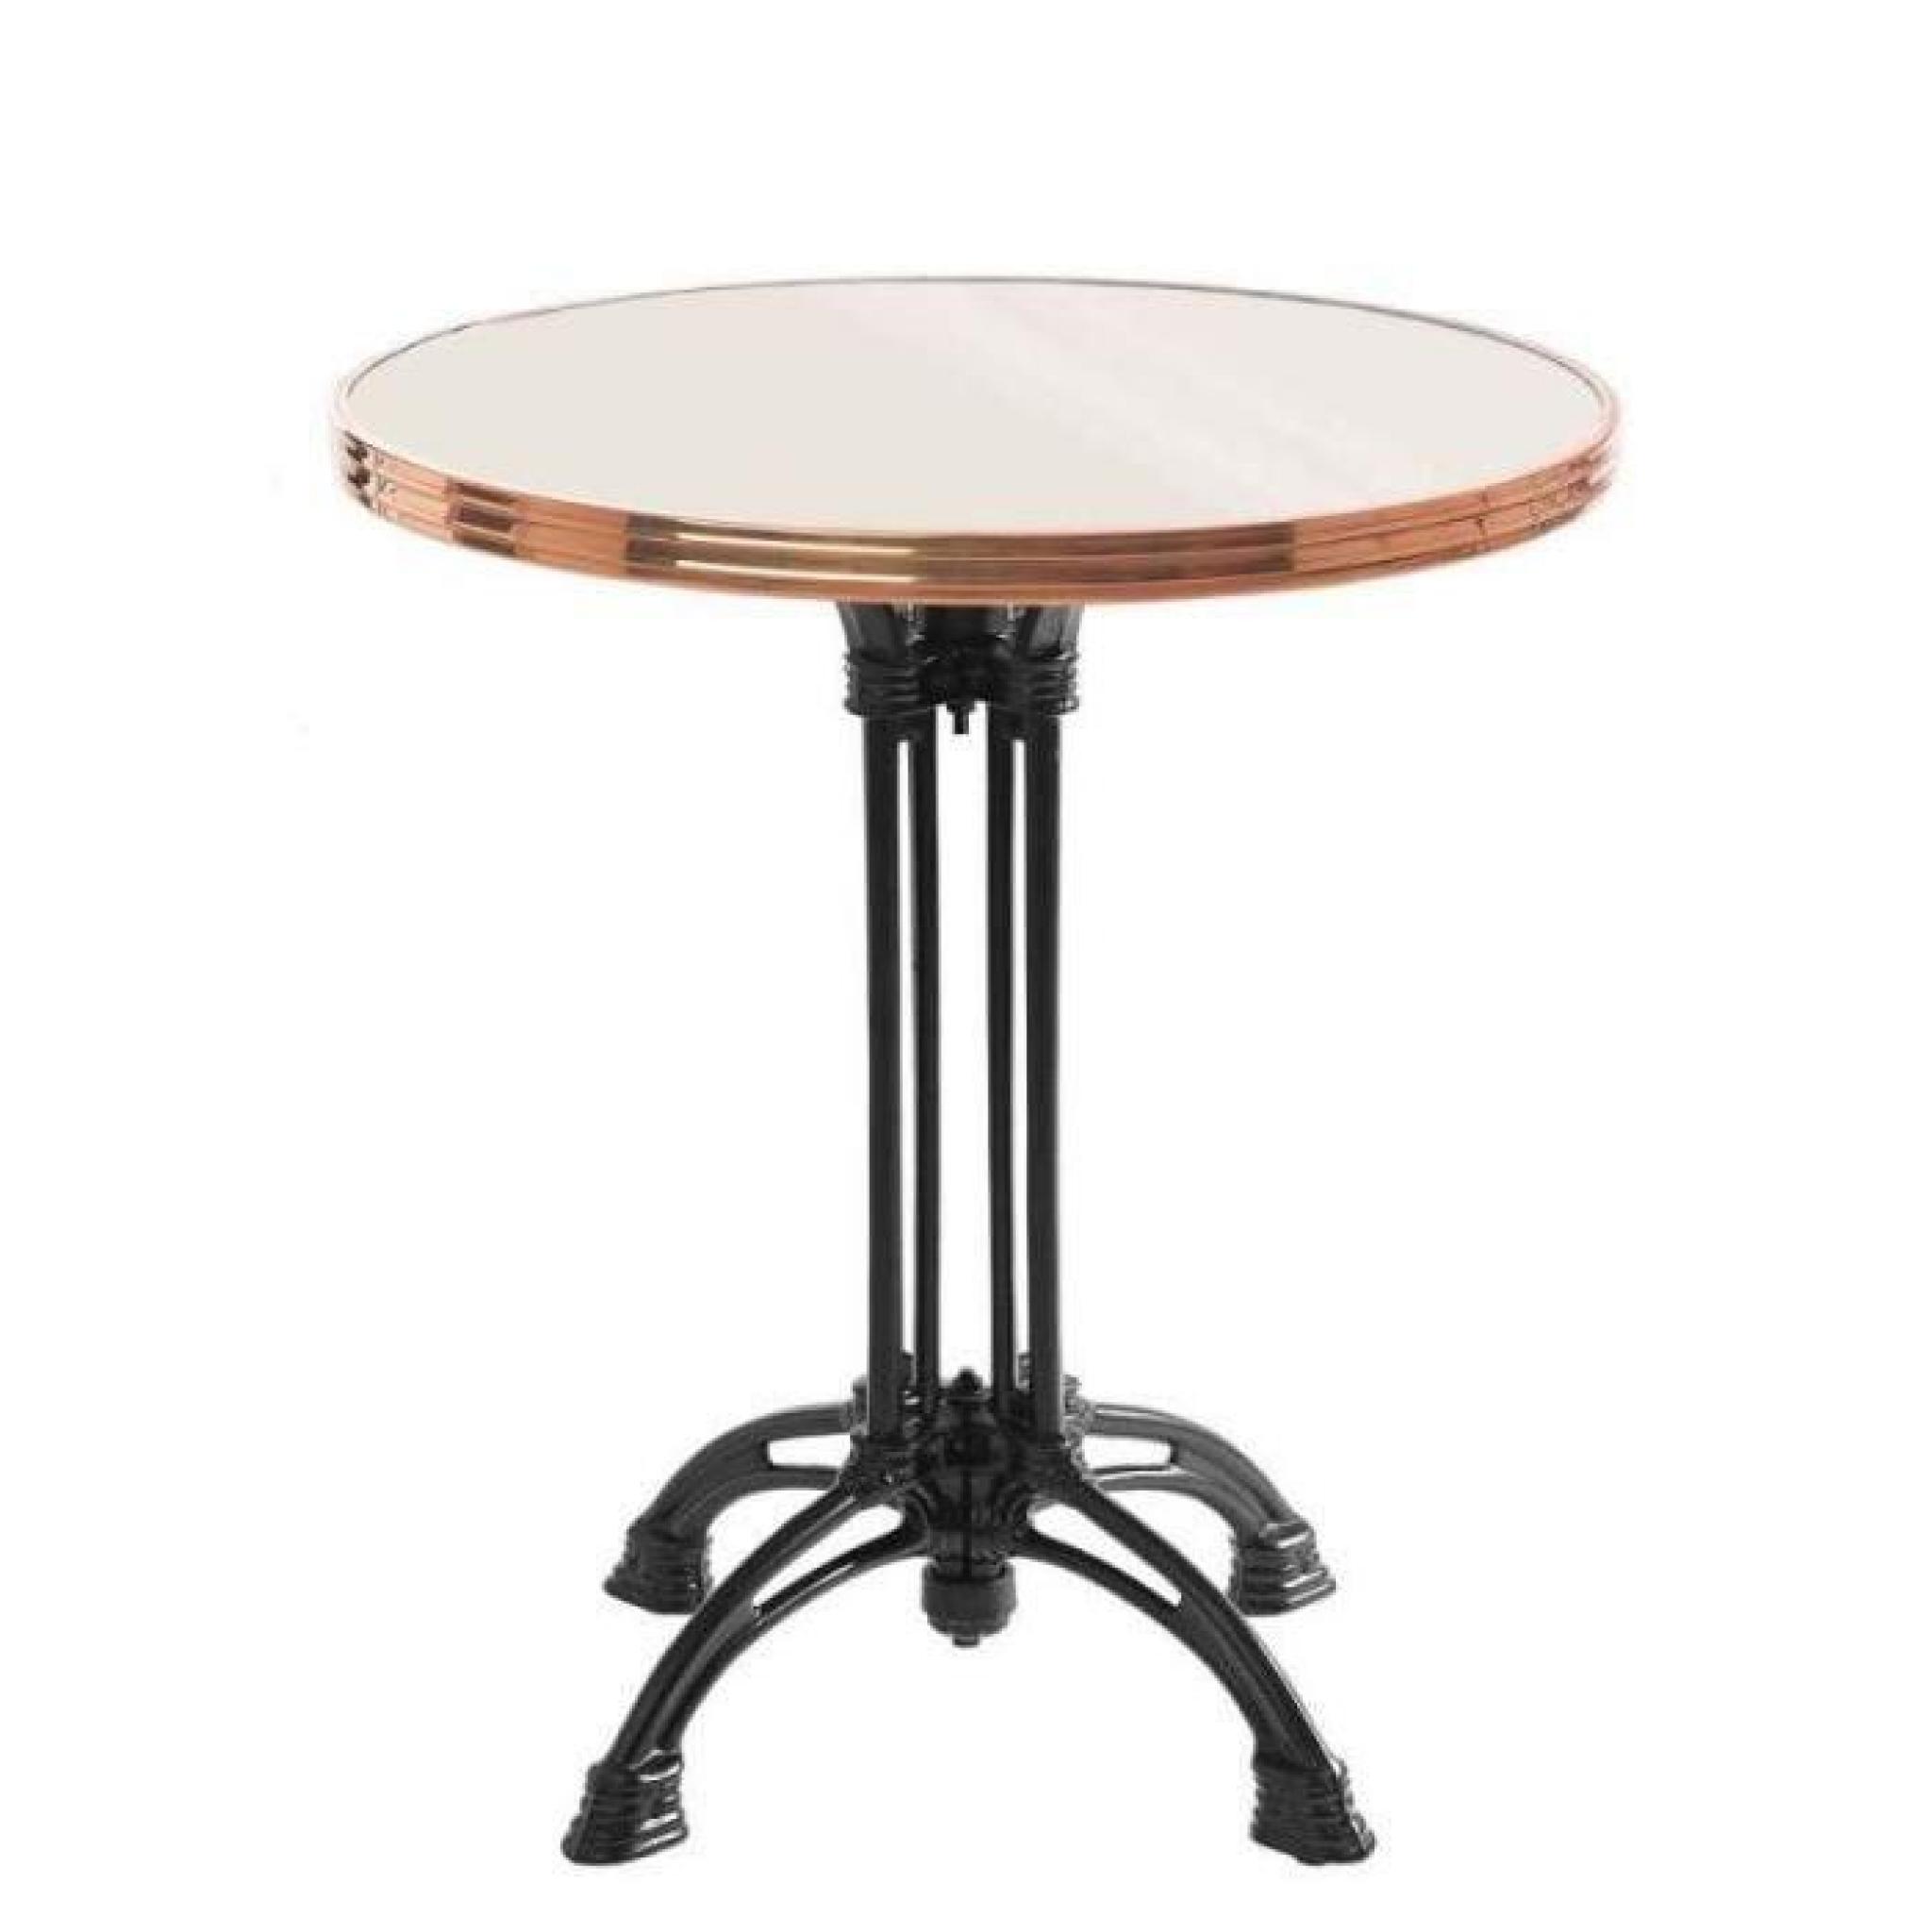 table bistrot ronde couleur ivoire avec cerclage en inox - pied eiffel 4 branches - h70 x d50 cm pas cher